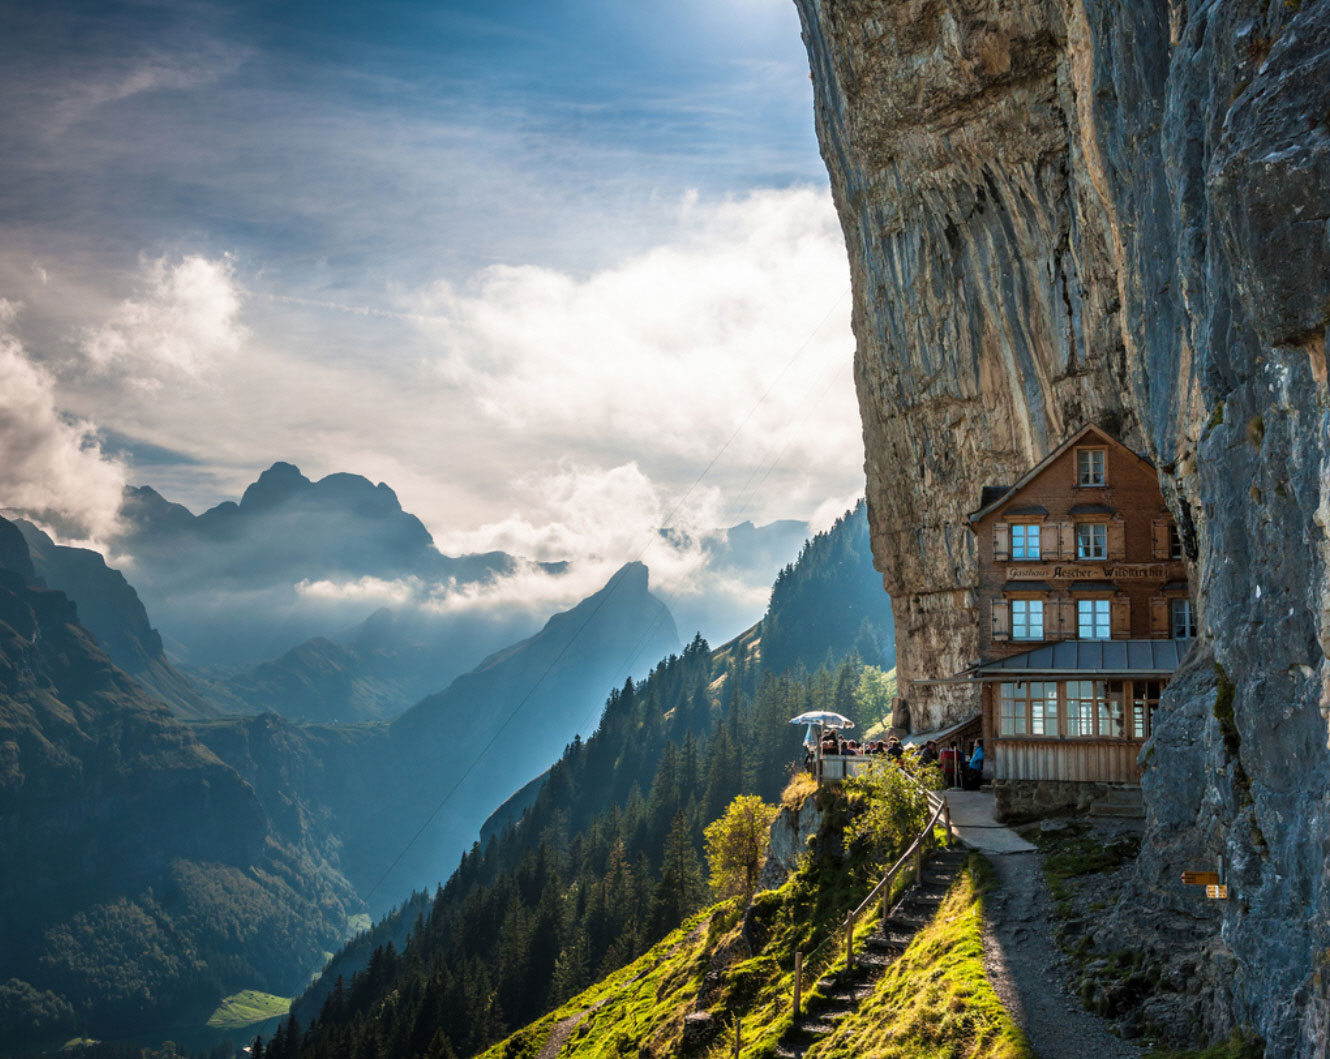 Ascher Cliff, Switzerland